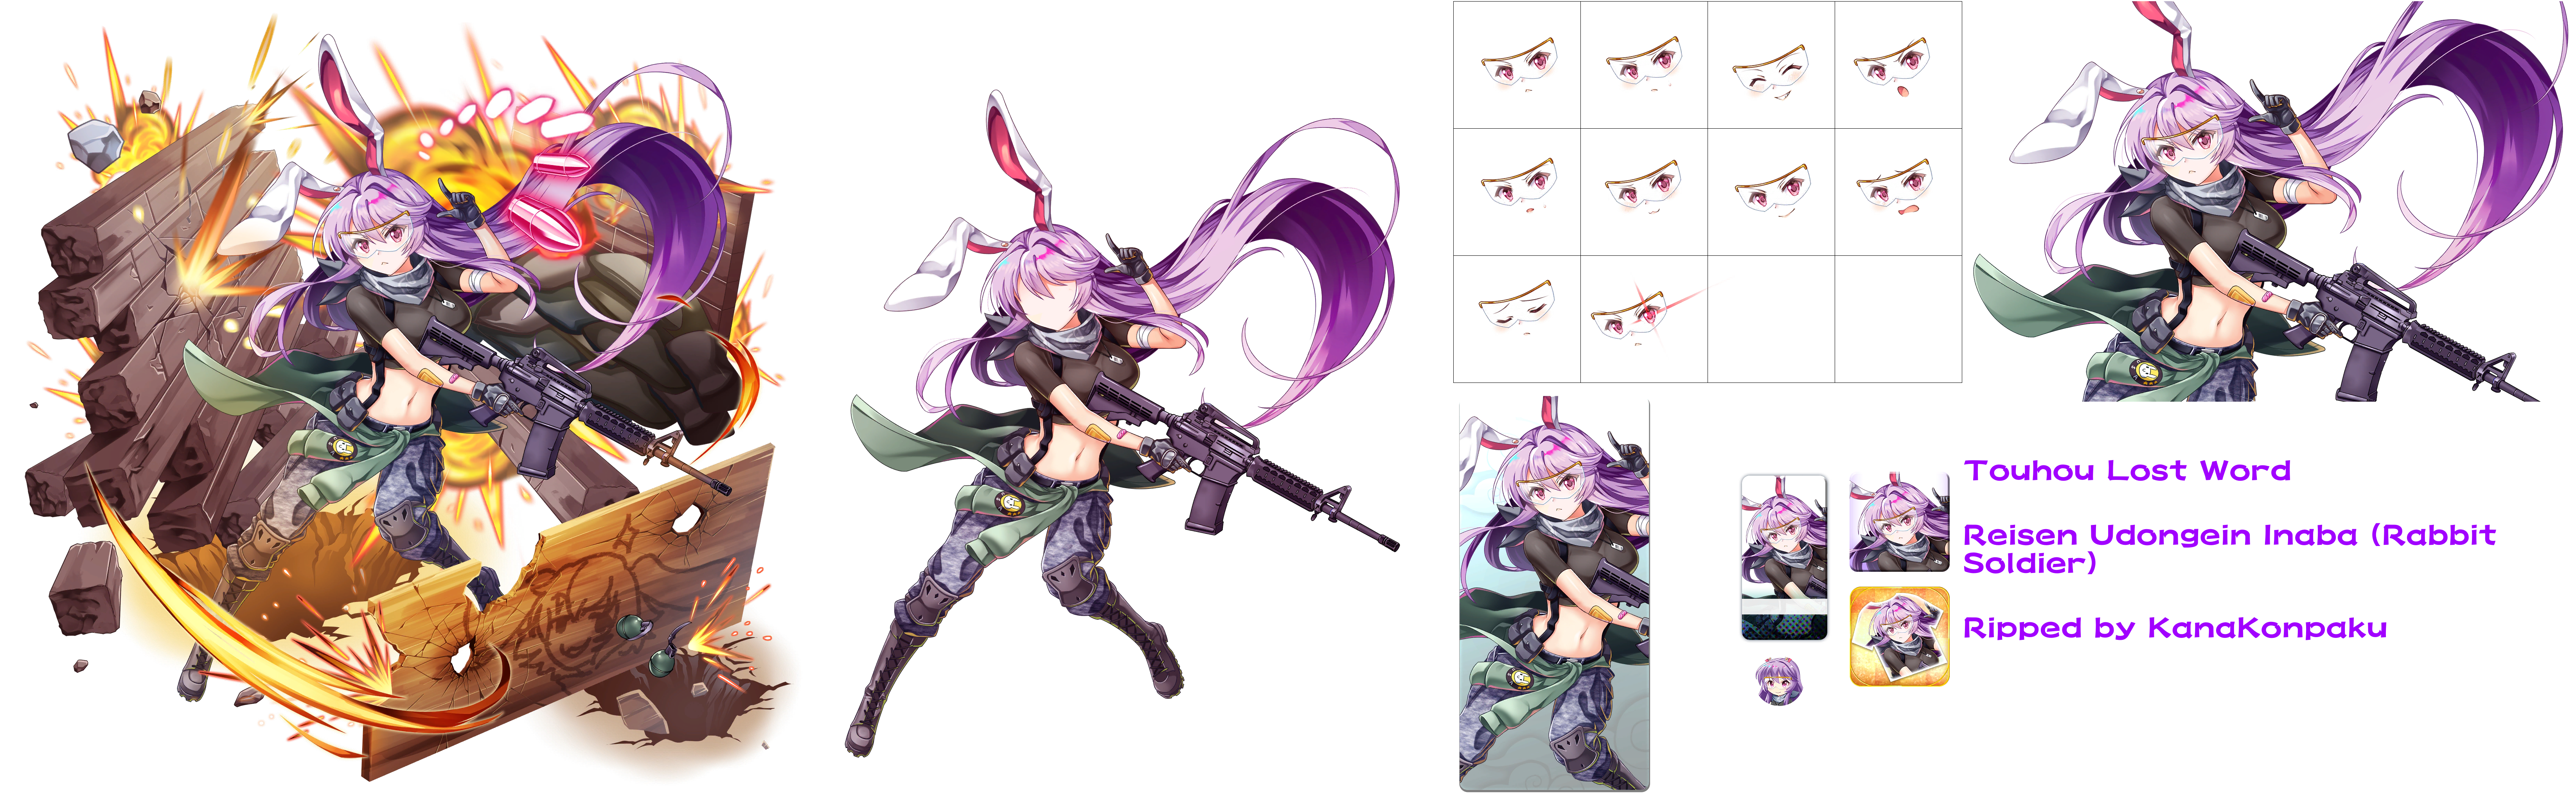 Reisen Udongein Inaba (Rabbit Soldier)